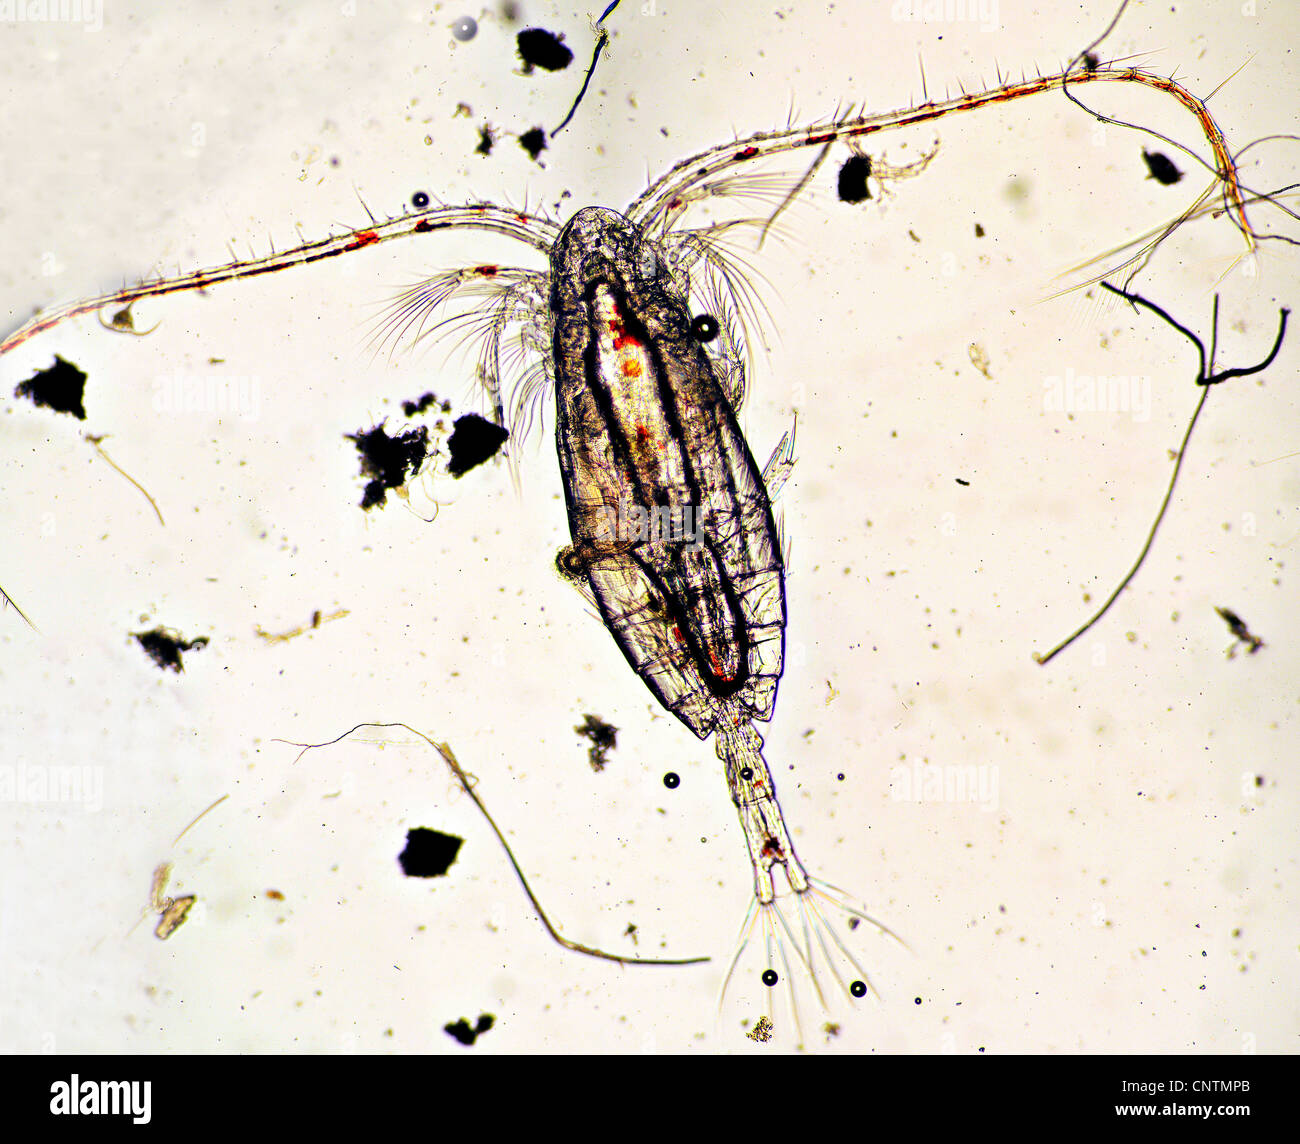 Copepod (Calanus finmarchicus), The planktonic Crustacean Calanus finmarchicus, the most common zooplankton in the North Sea, Dorsal view Stock Photo